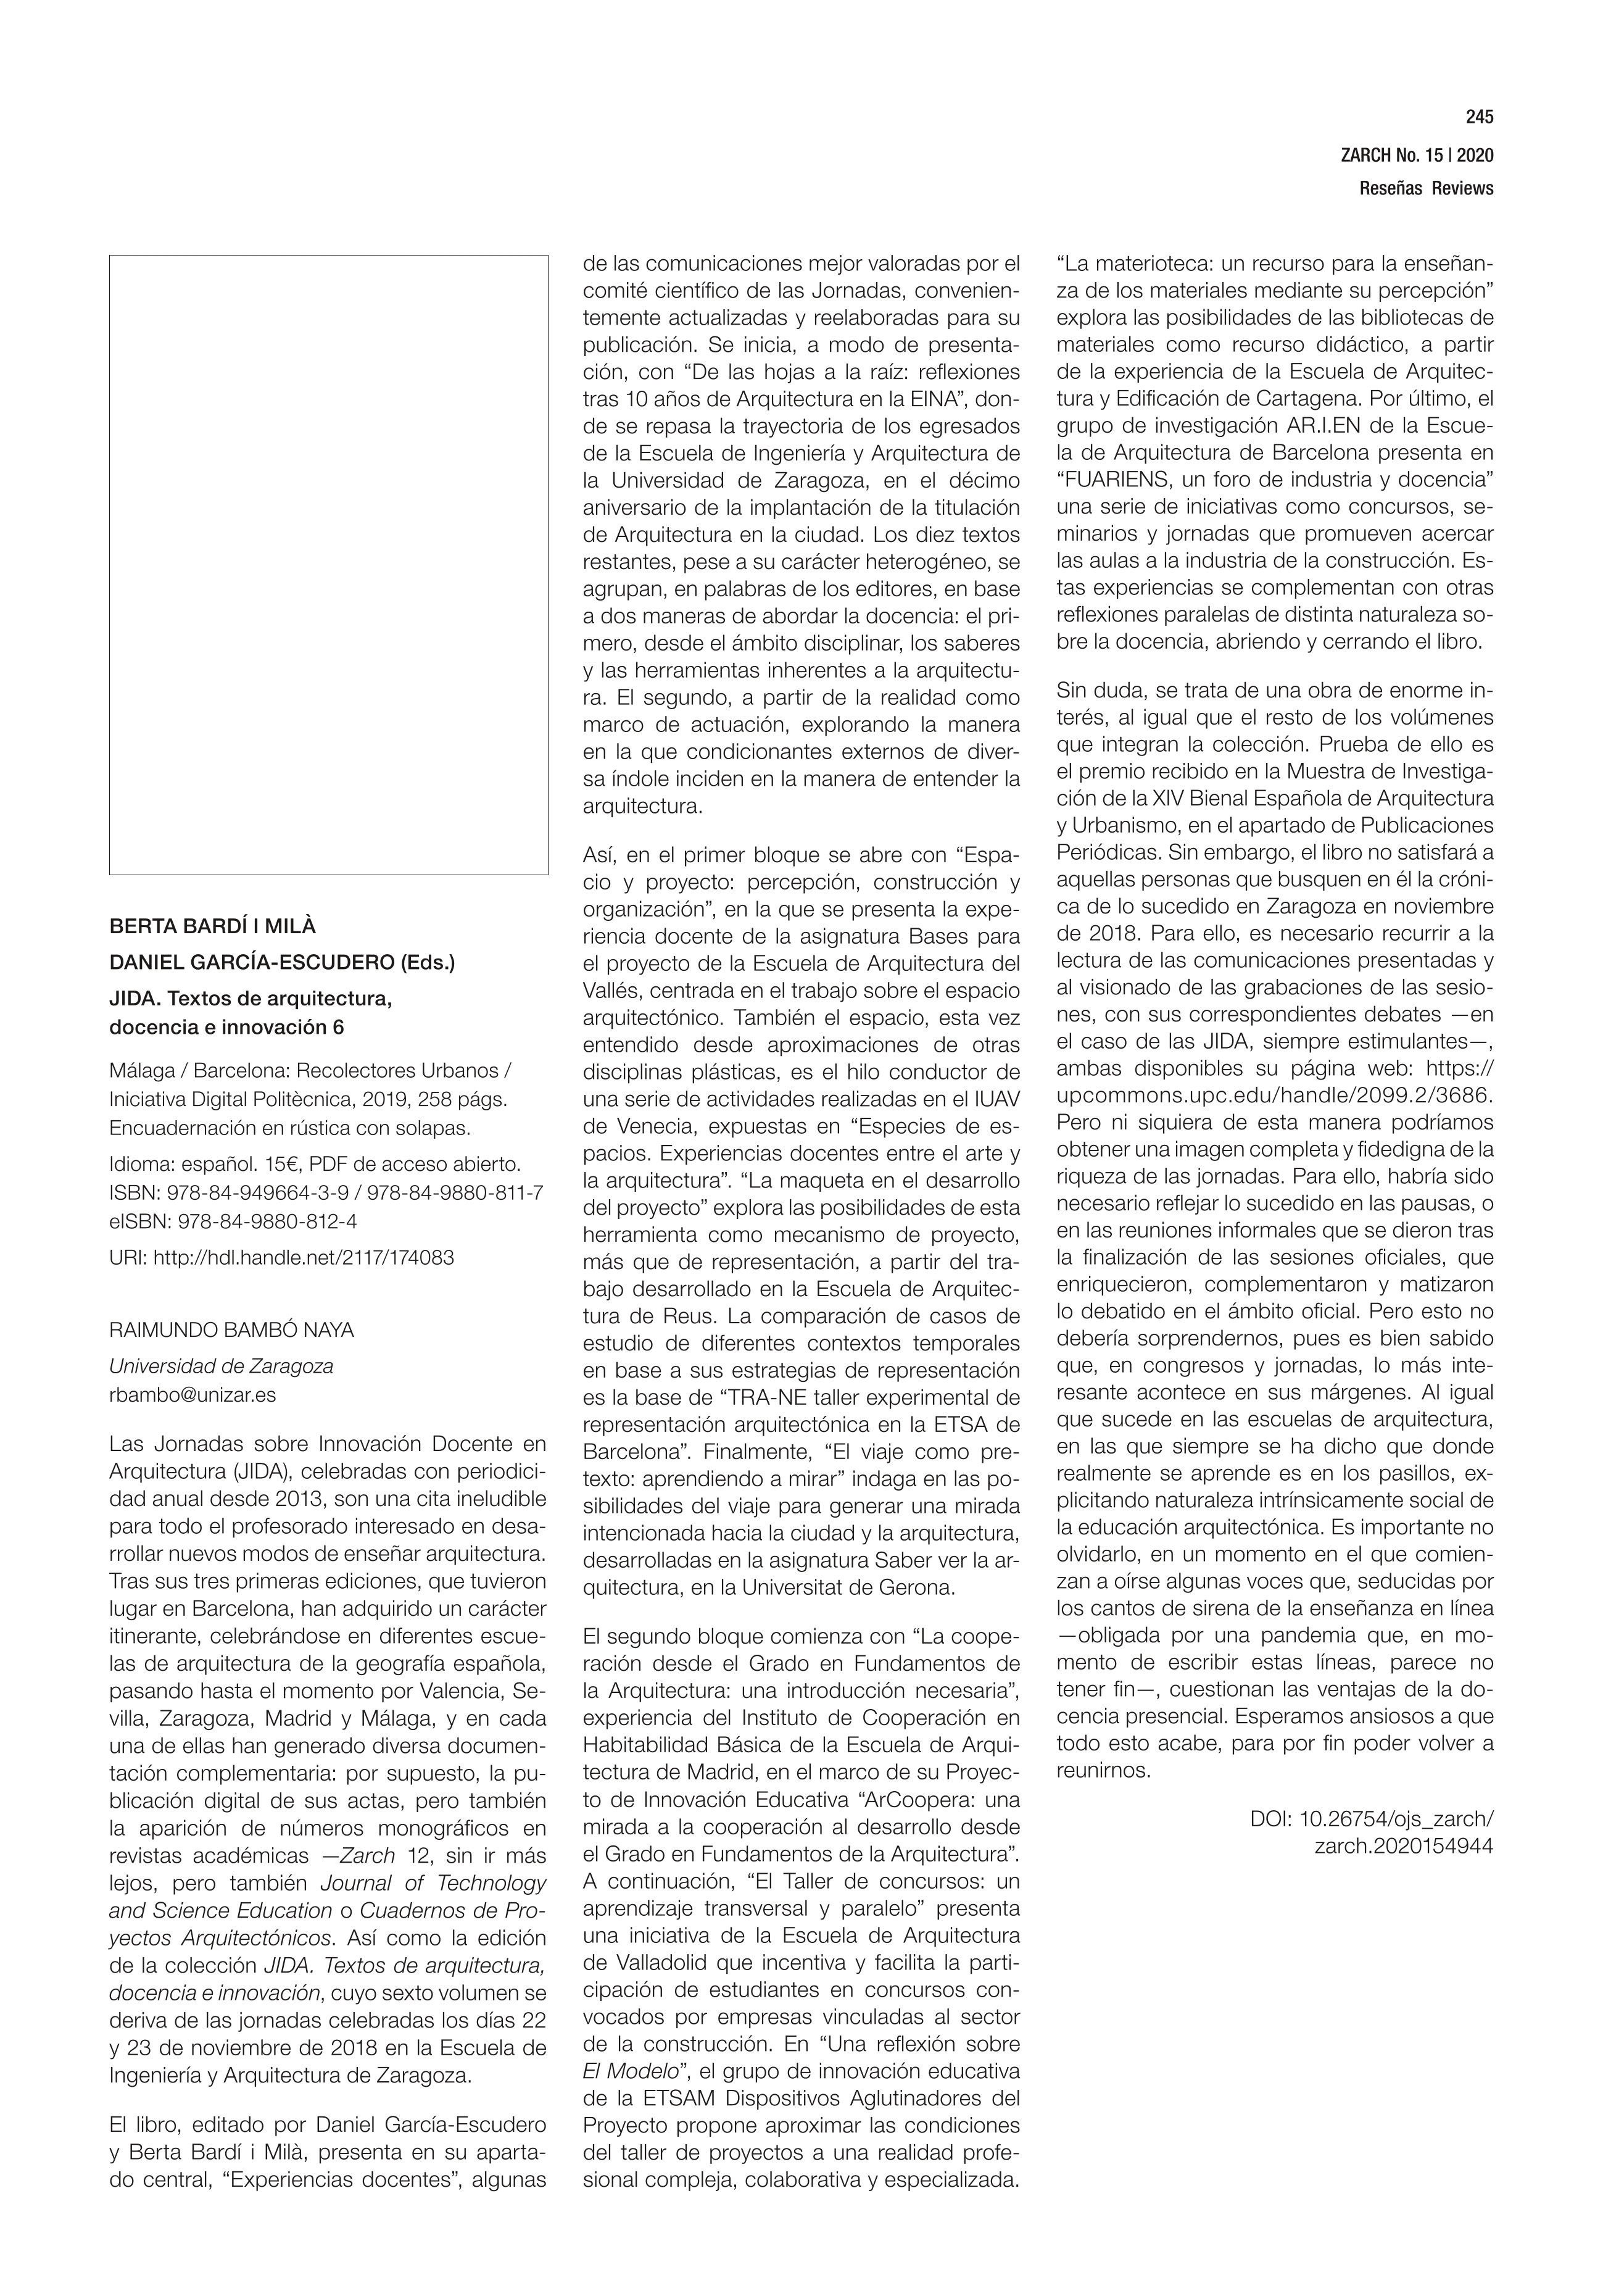 Berta Bardí I Milà, Daniel García-Escudero (Eds.) JIDA. Textos de arquitectura, docencia e innovación 6